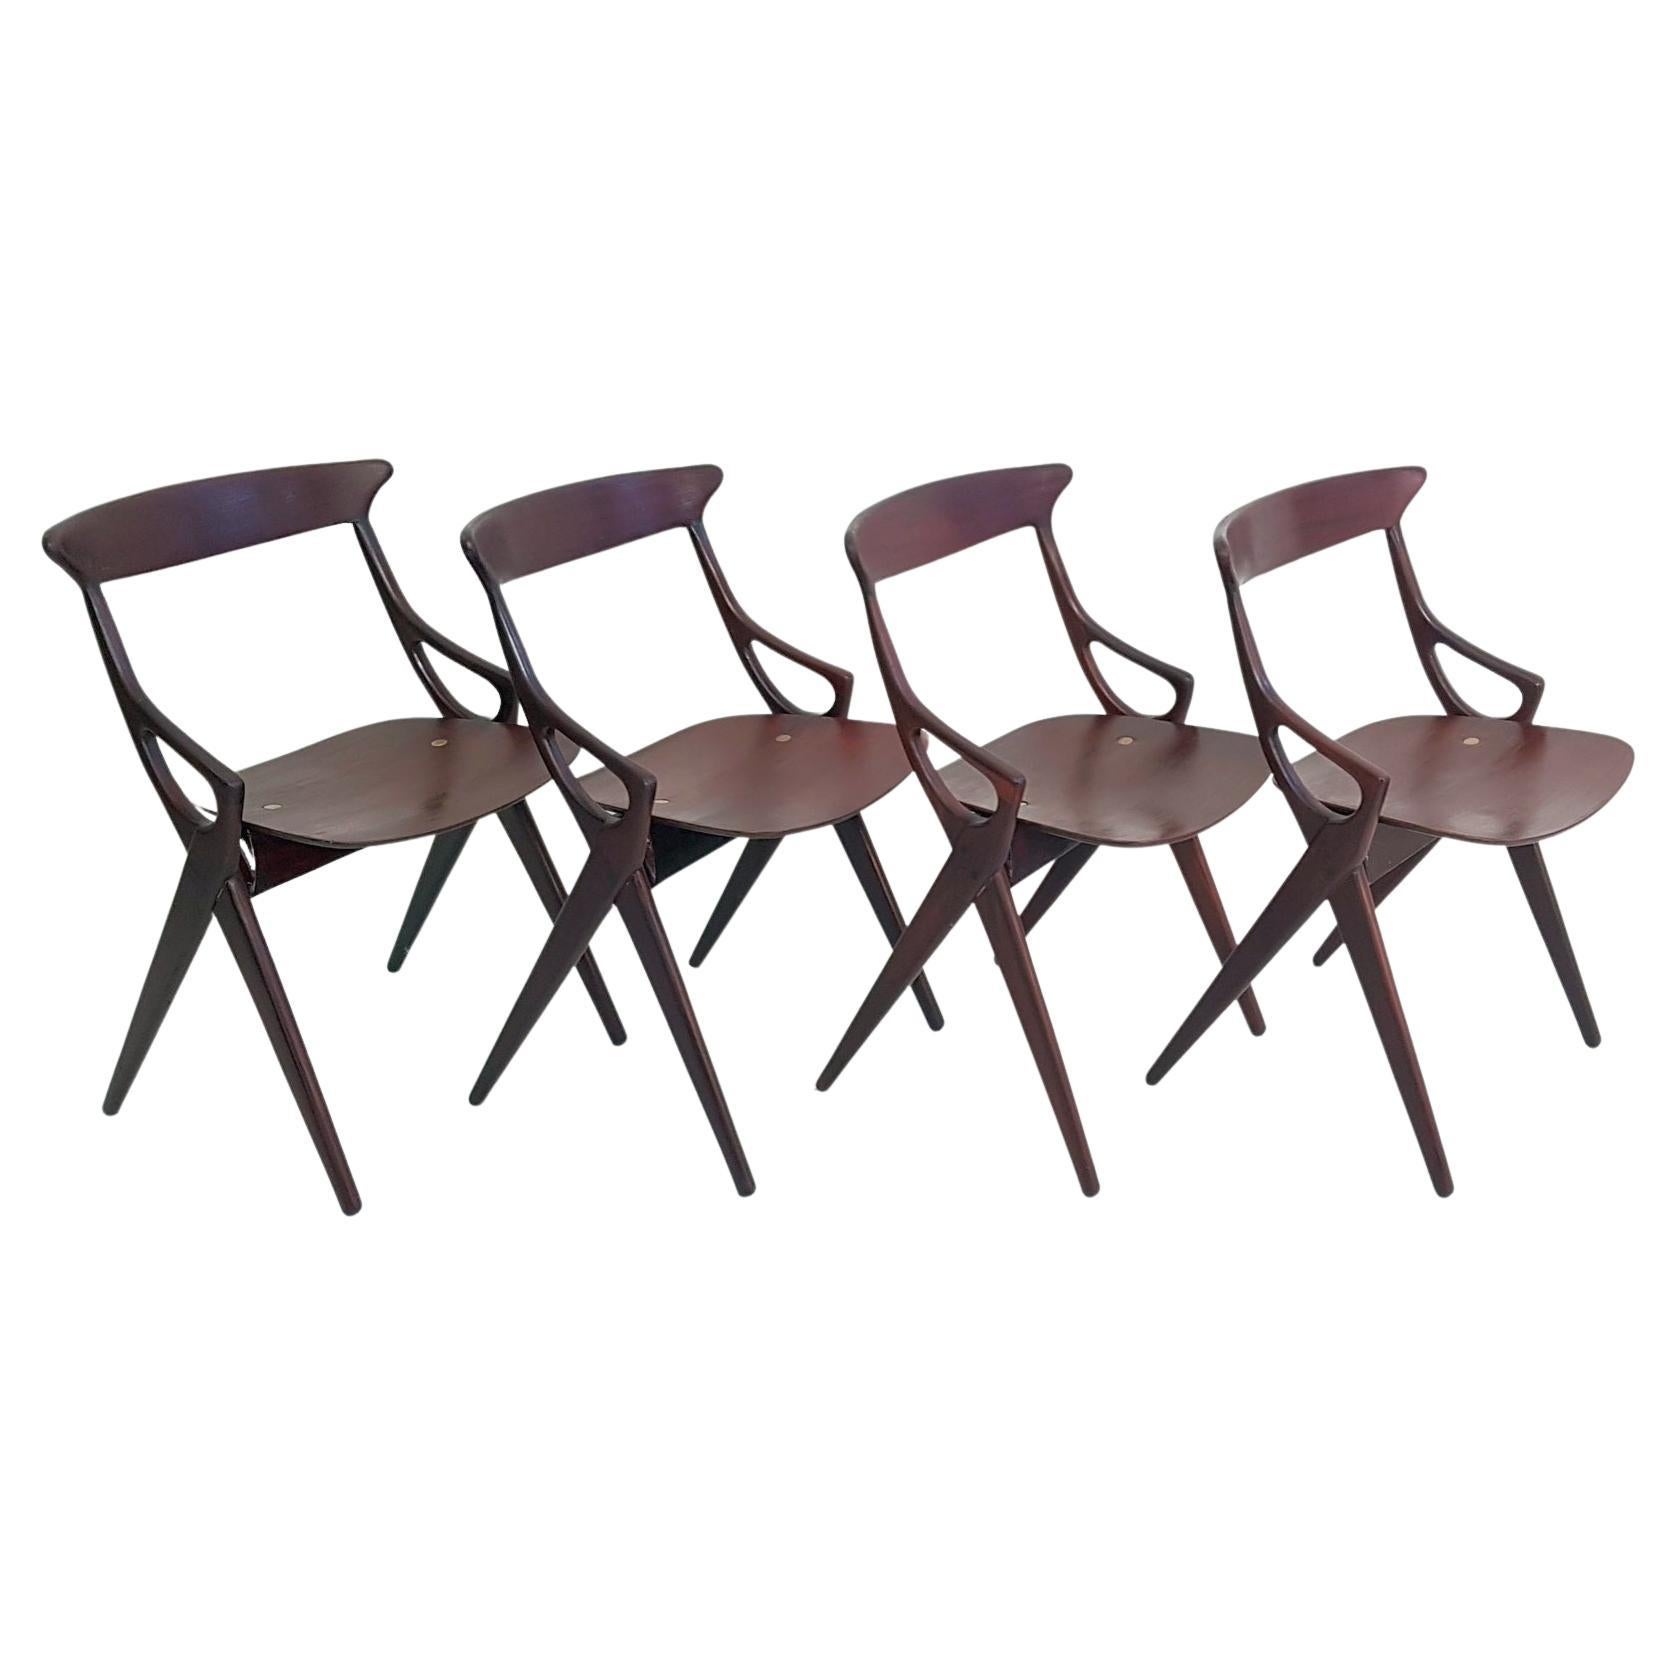 Set of 4 Dining Chairs by Arne Hovmand Olsen for Mogens Kold, Denmark, 1959